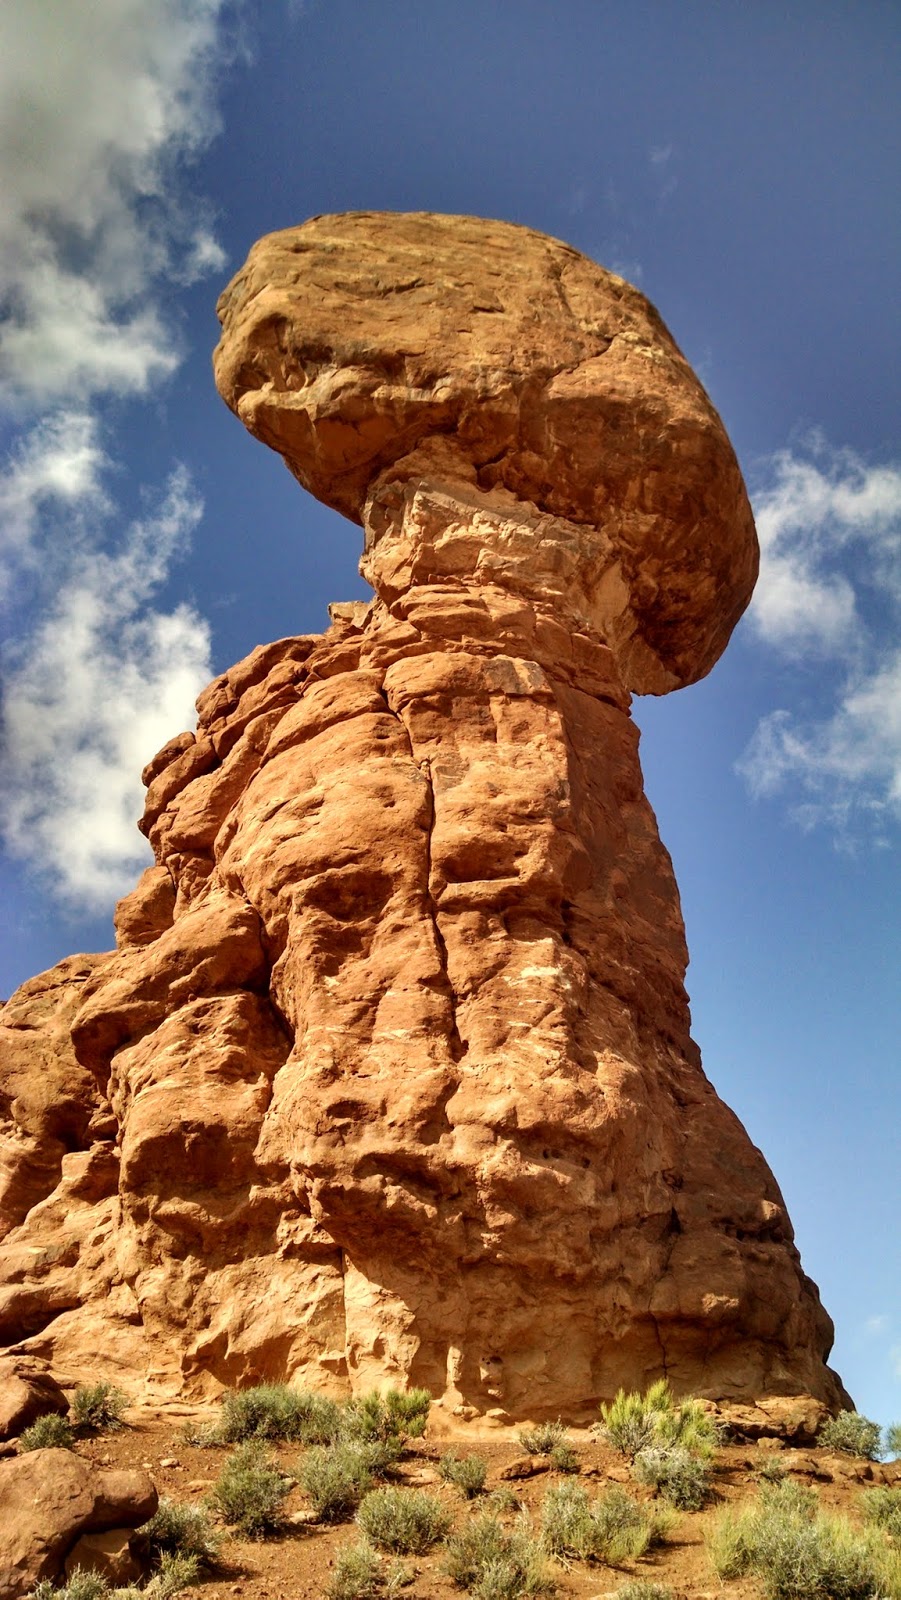 Сбалансированный камень. Национальный парк Арчес, Юта (Balanced Rock. Arches National Park, UT)